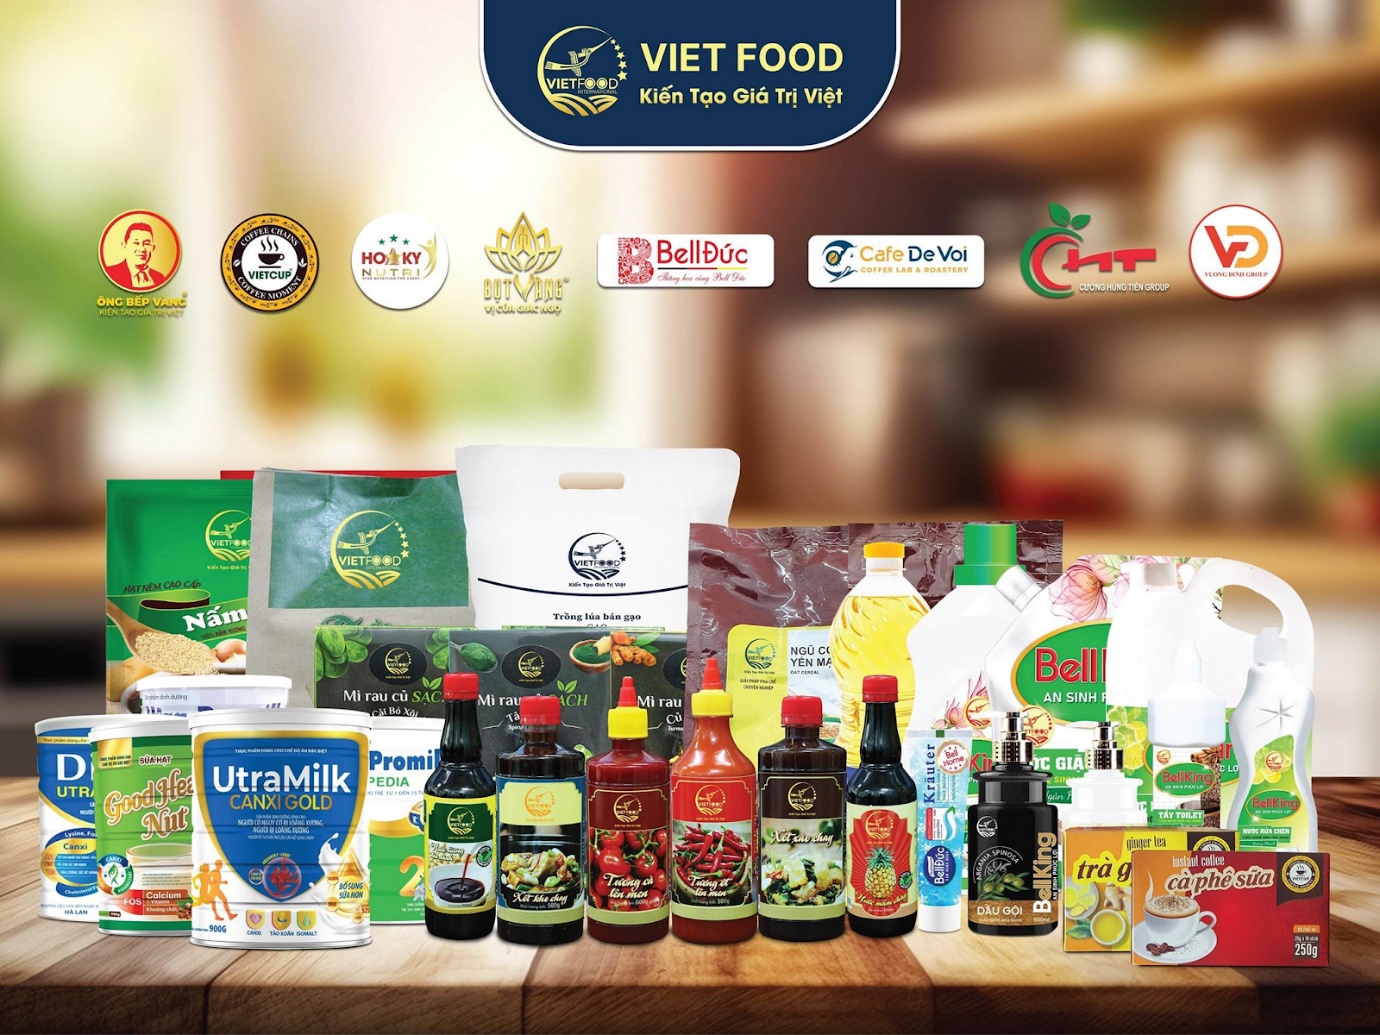 Ông Bếp Việt Nguyễn Huỳnh Đạt - Nhà sáng lập dự án “An Sinh Vietfood” kiến tạo giá trị Việt mở cửa tương lai - 4